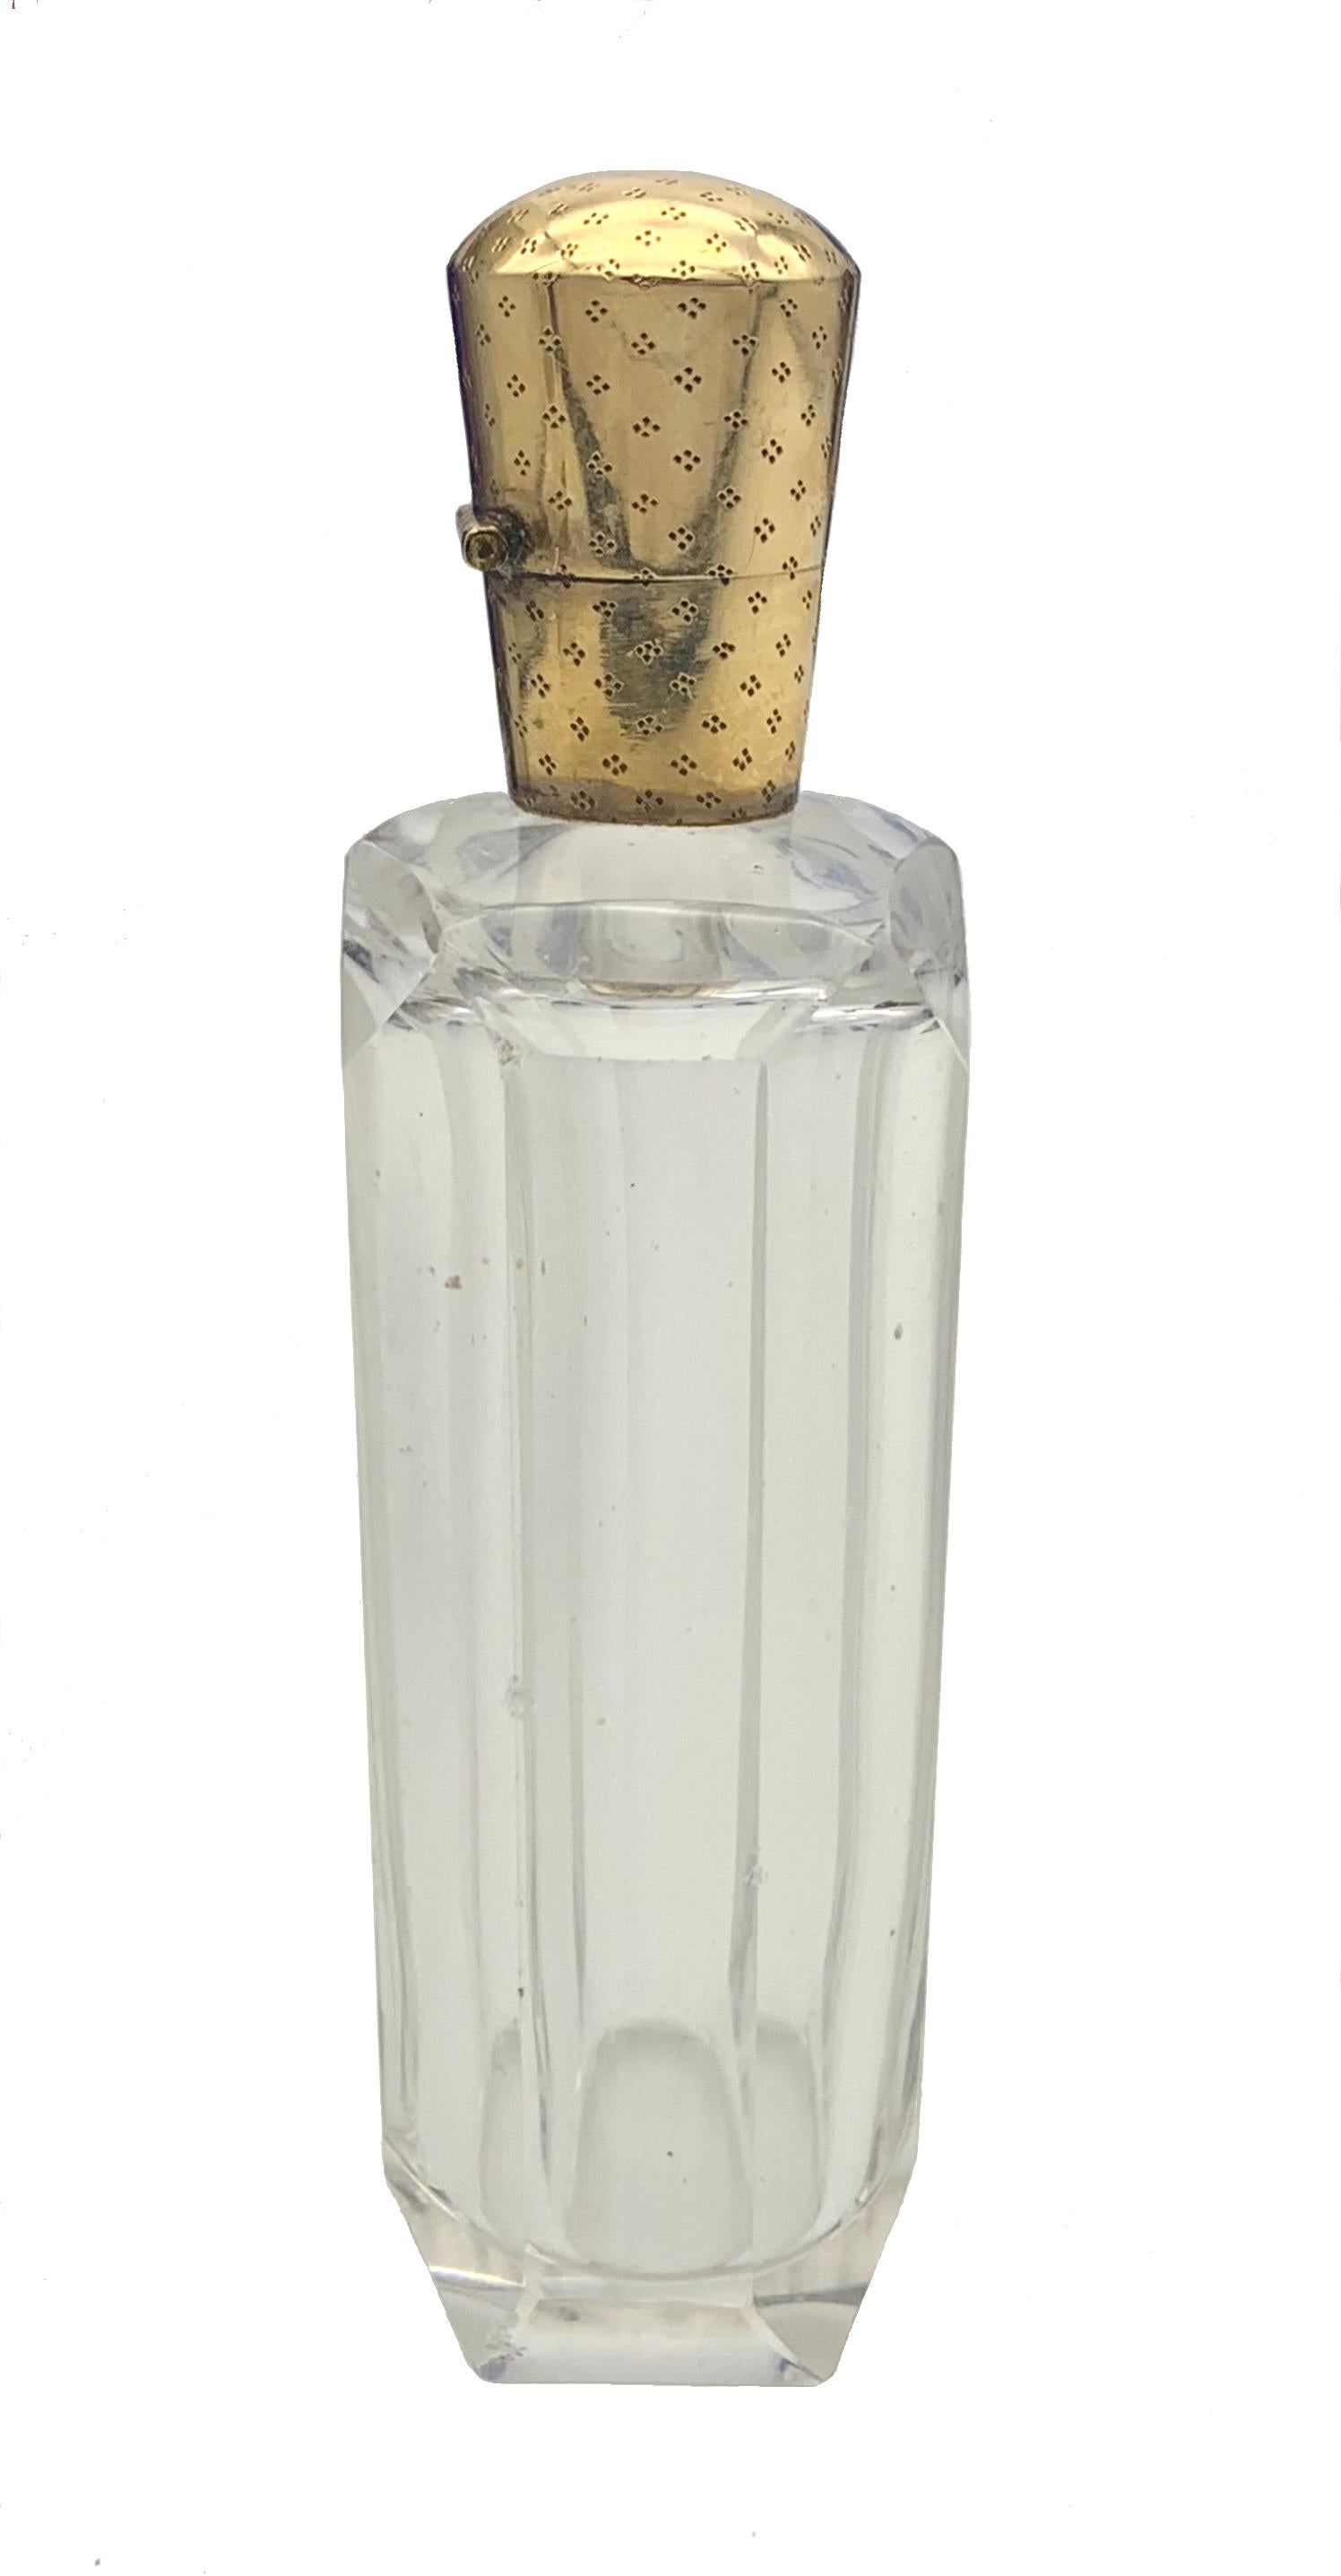 Ce flacon de parfum est en verre taillé à facettes et est muni d'un couvercle en or rouge 14 carats. Les ferrures en or sont décorées d'un motif finement ciselé et les deux côtés du couvercle portent le poinçon néerlandais en forme de feuille de